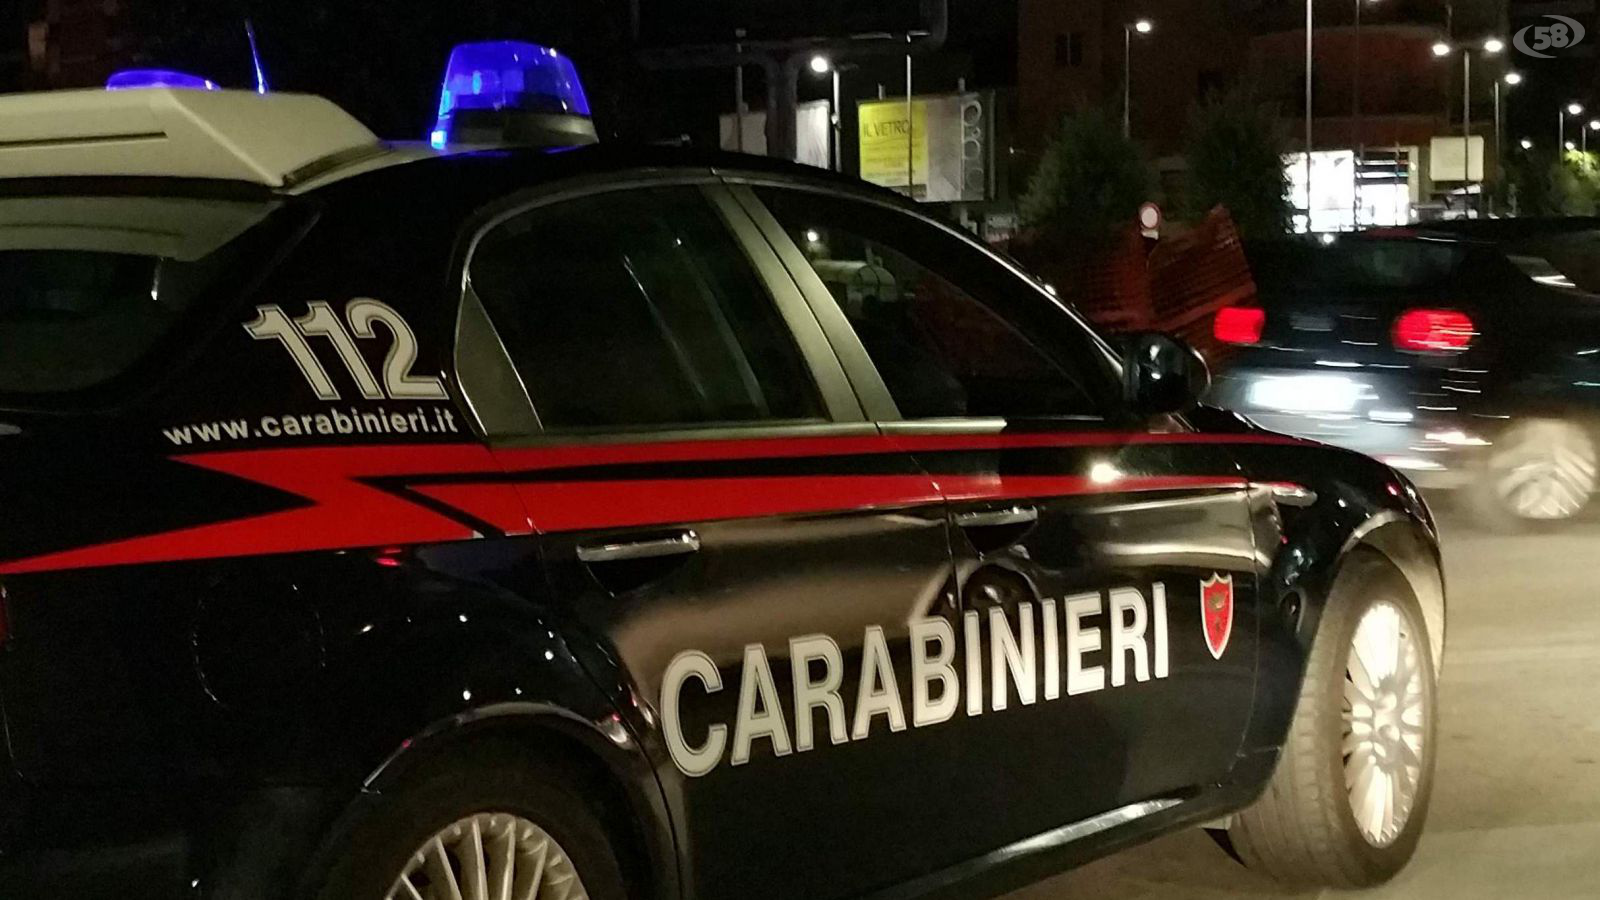 carabinieri montesarchiob